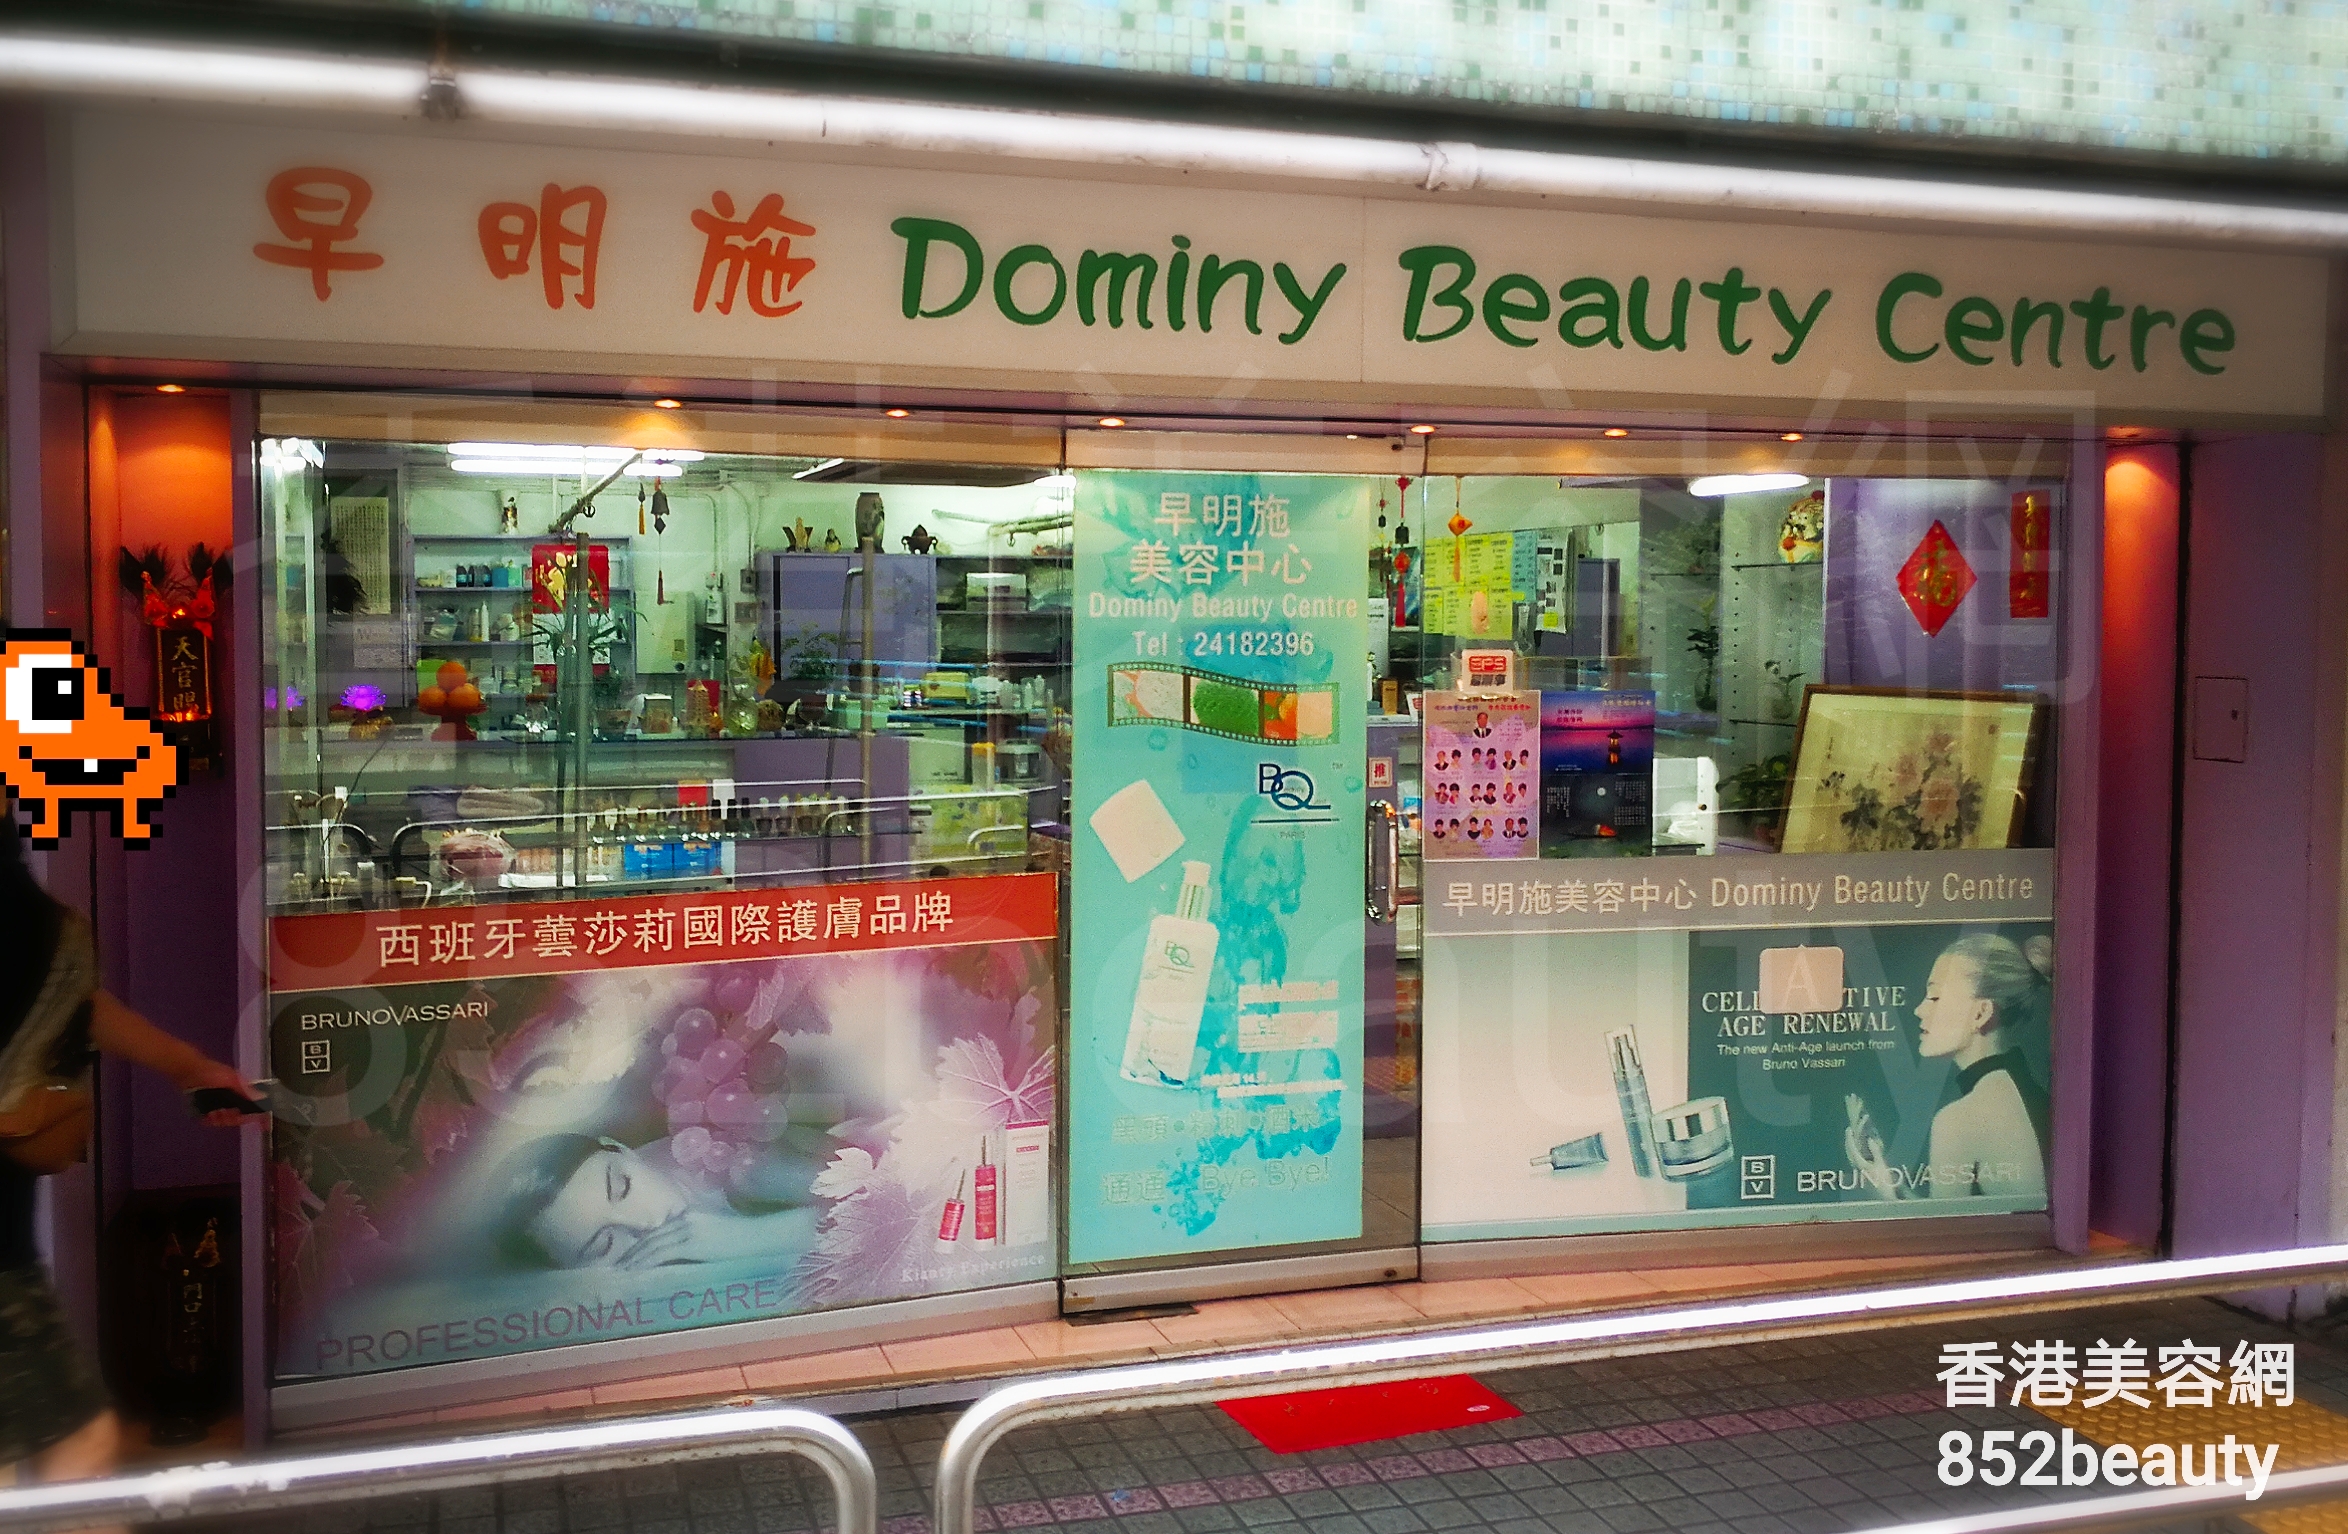 面部护理: 早明施美容中心 Dominy Beauty Centre